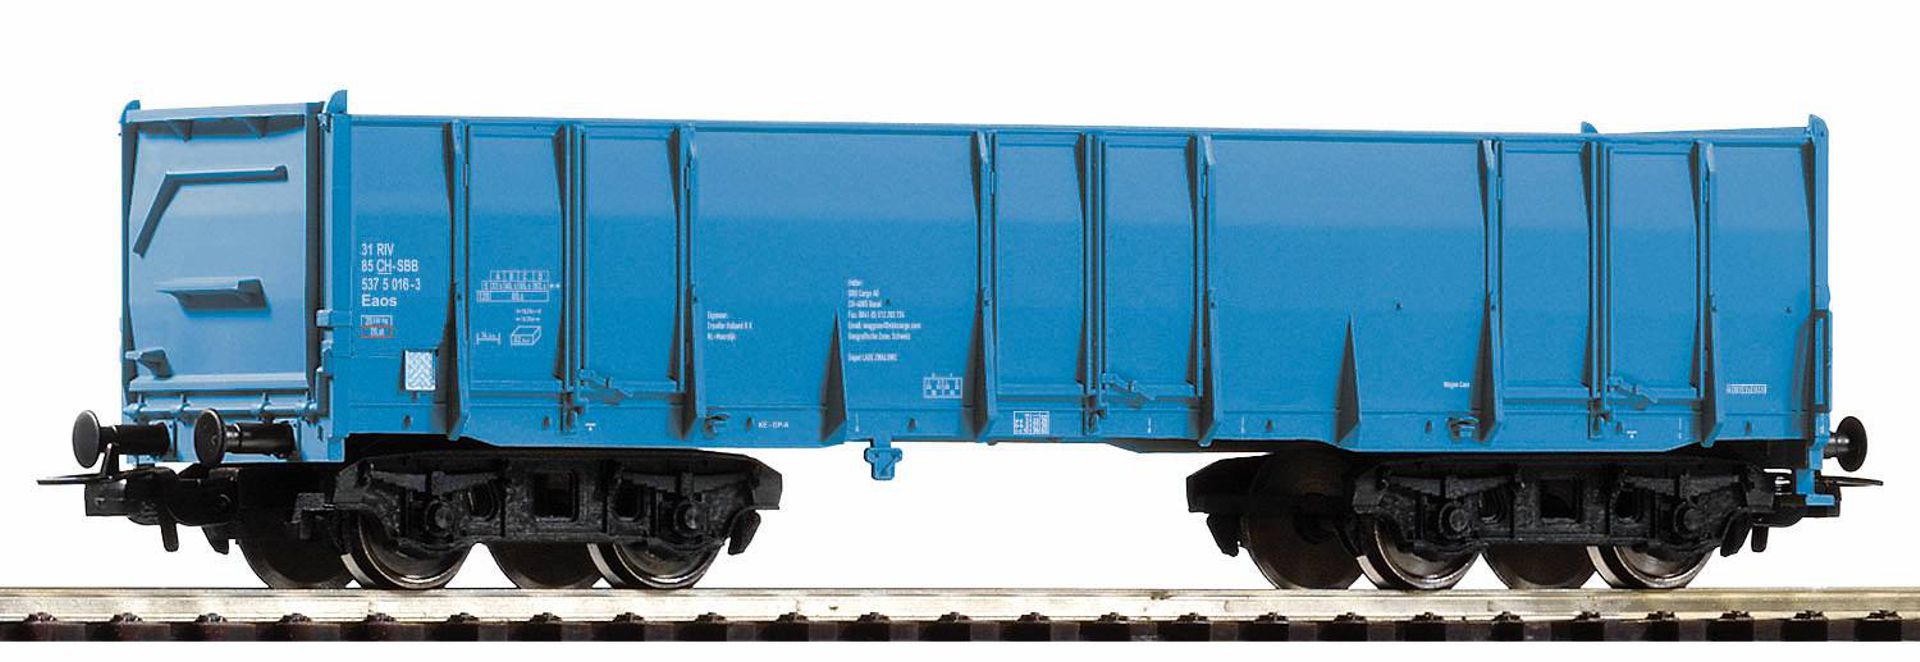 Piko 98546-B4 - Hochbordwagen Eaos, blau, SBB, Ep.VI, blau, Betriebsnummer 4